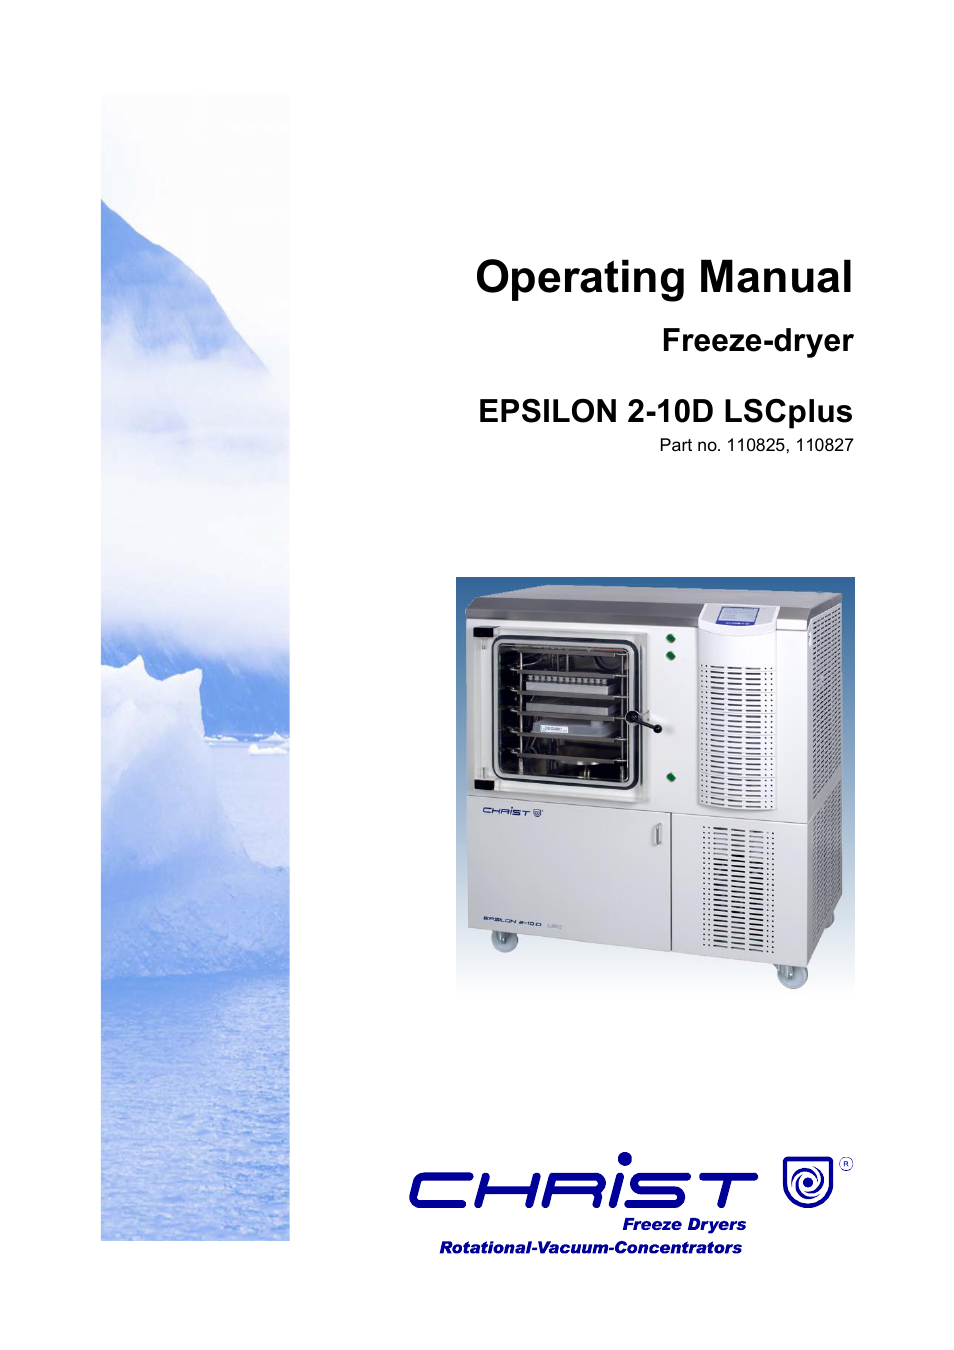 Epsilon 2-10D LSCplus